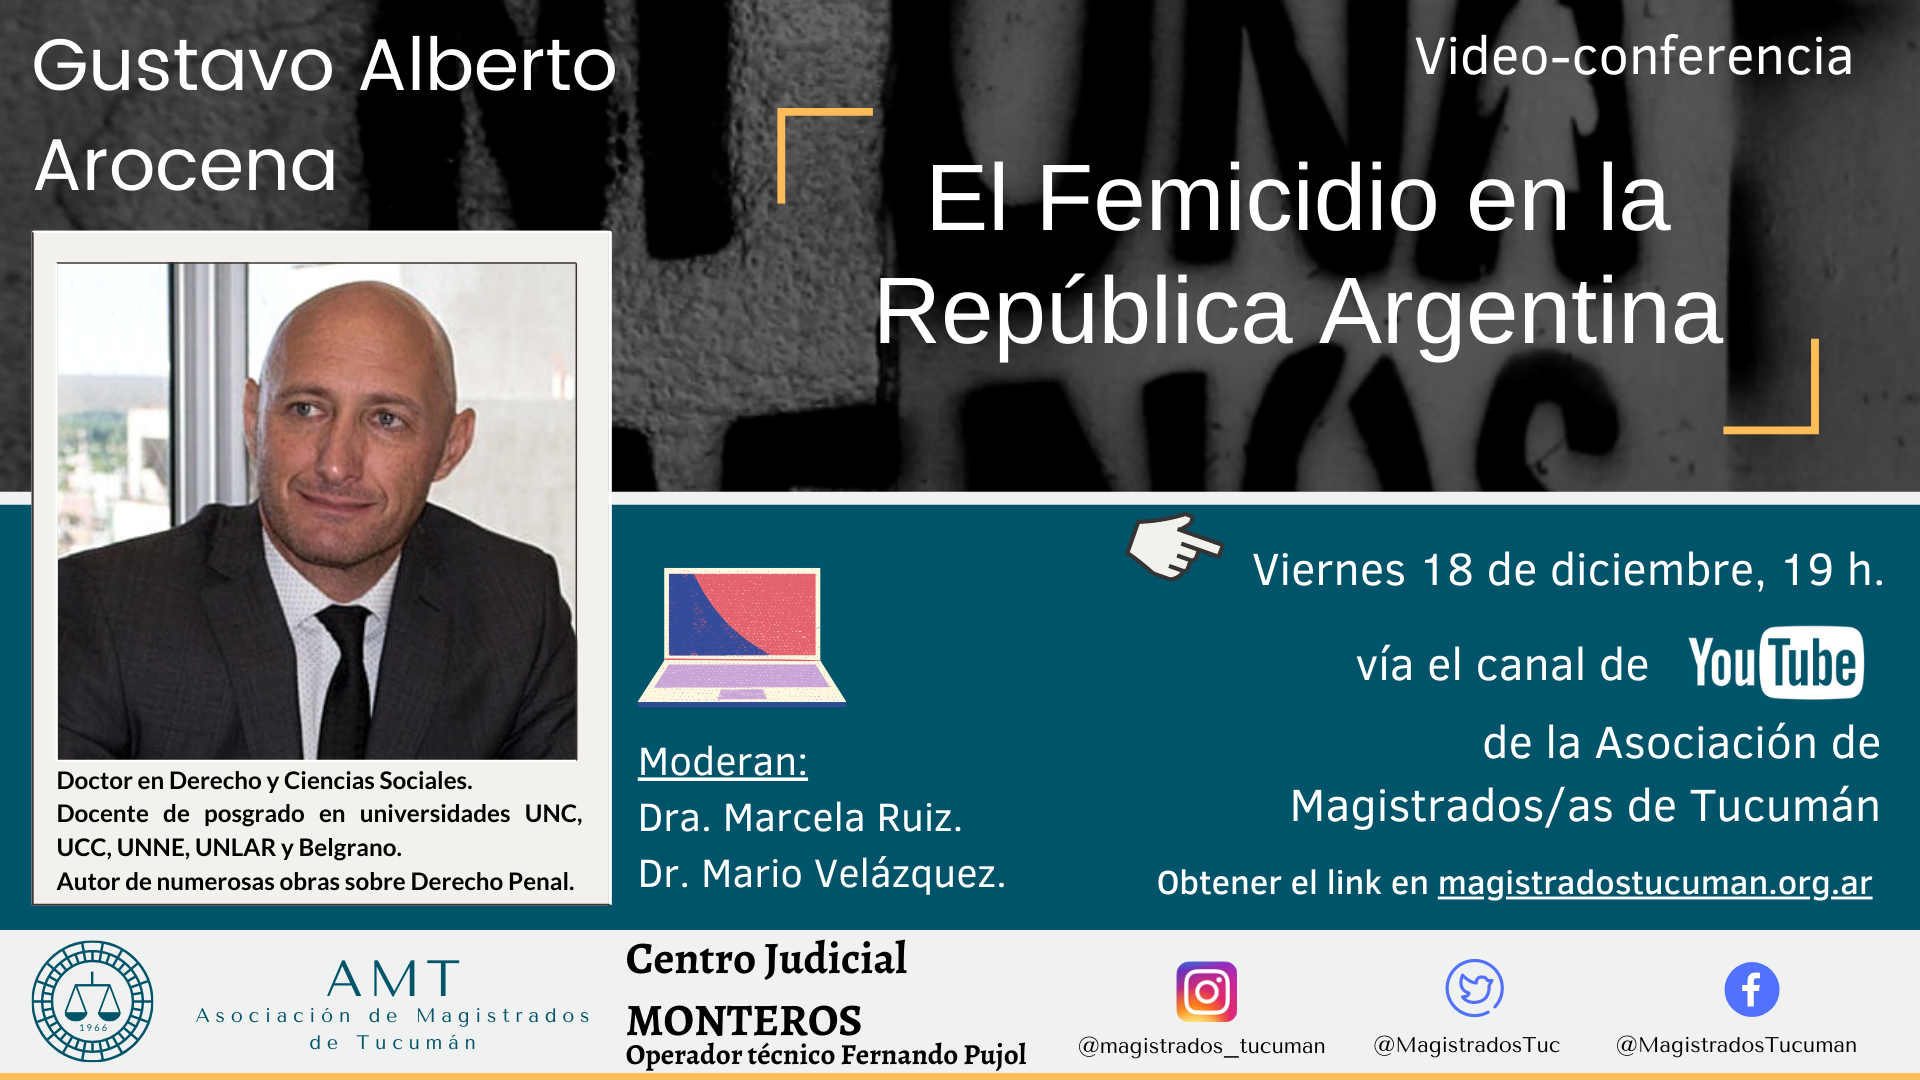 Vuelva a ver la conferencia de Gustavo A. Arocena – El Femicidio en la República Argentina